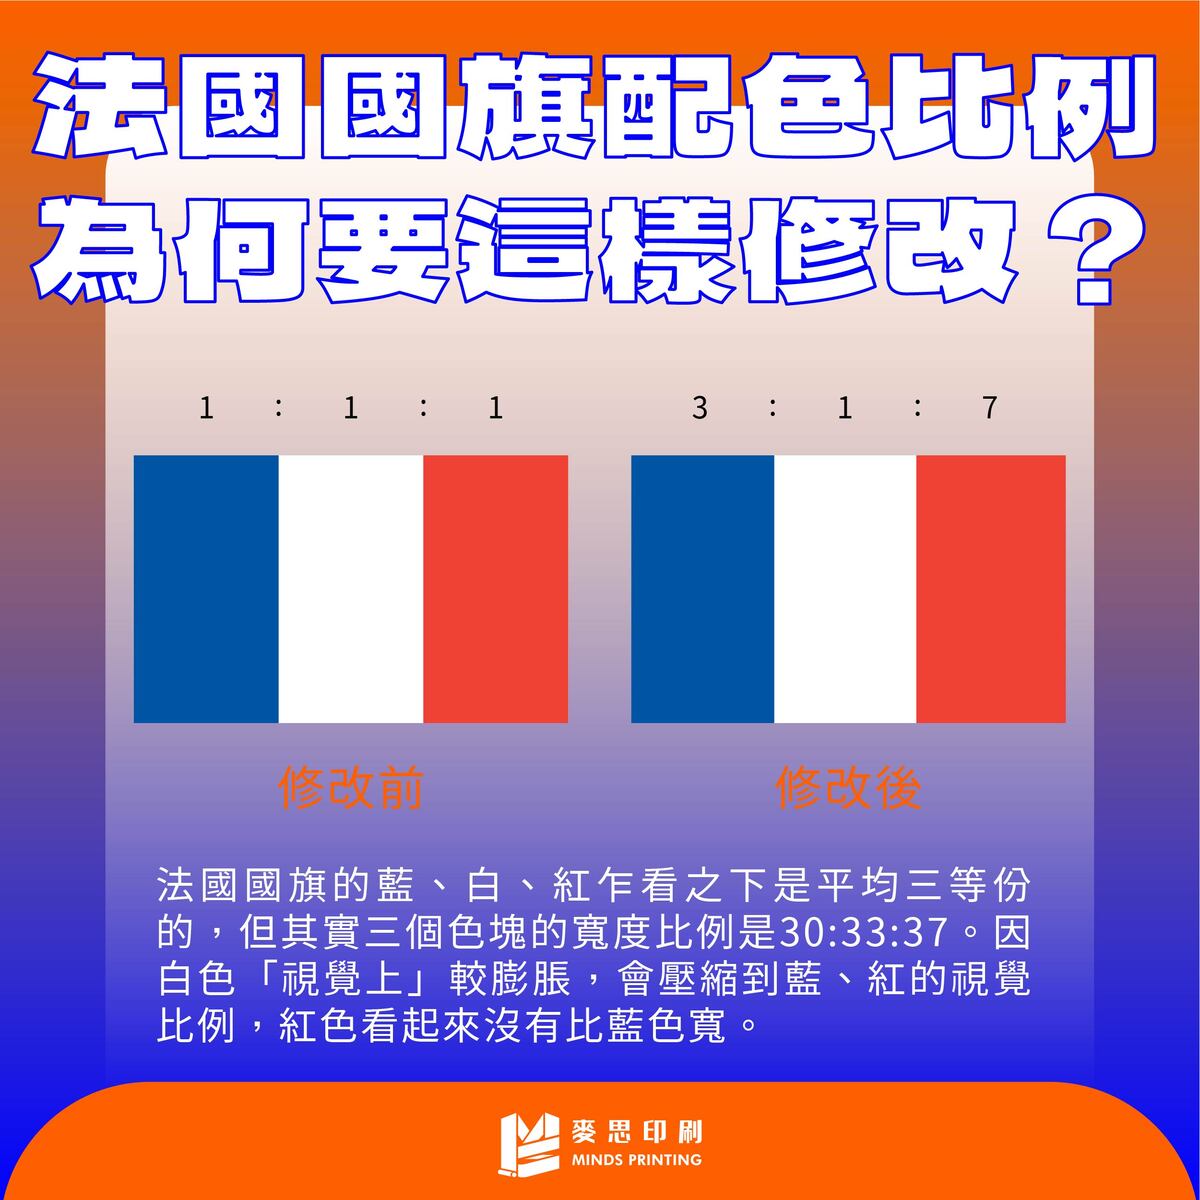 法國國旗的藍、白、紅乍看之下是平均三等份的，但其實三個色塊的寬度比例是30:33:37。